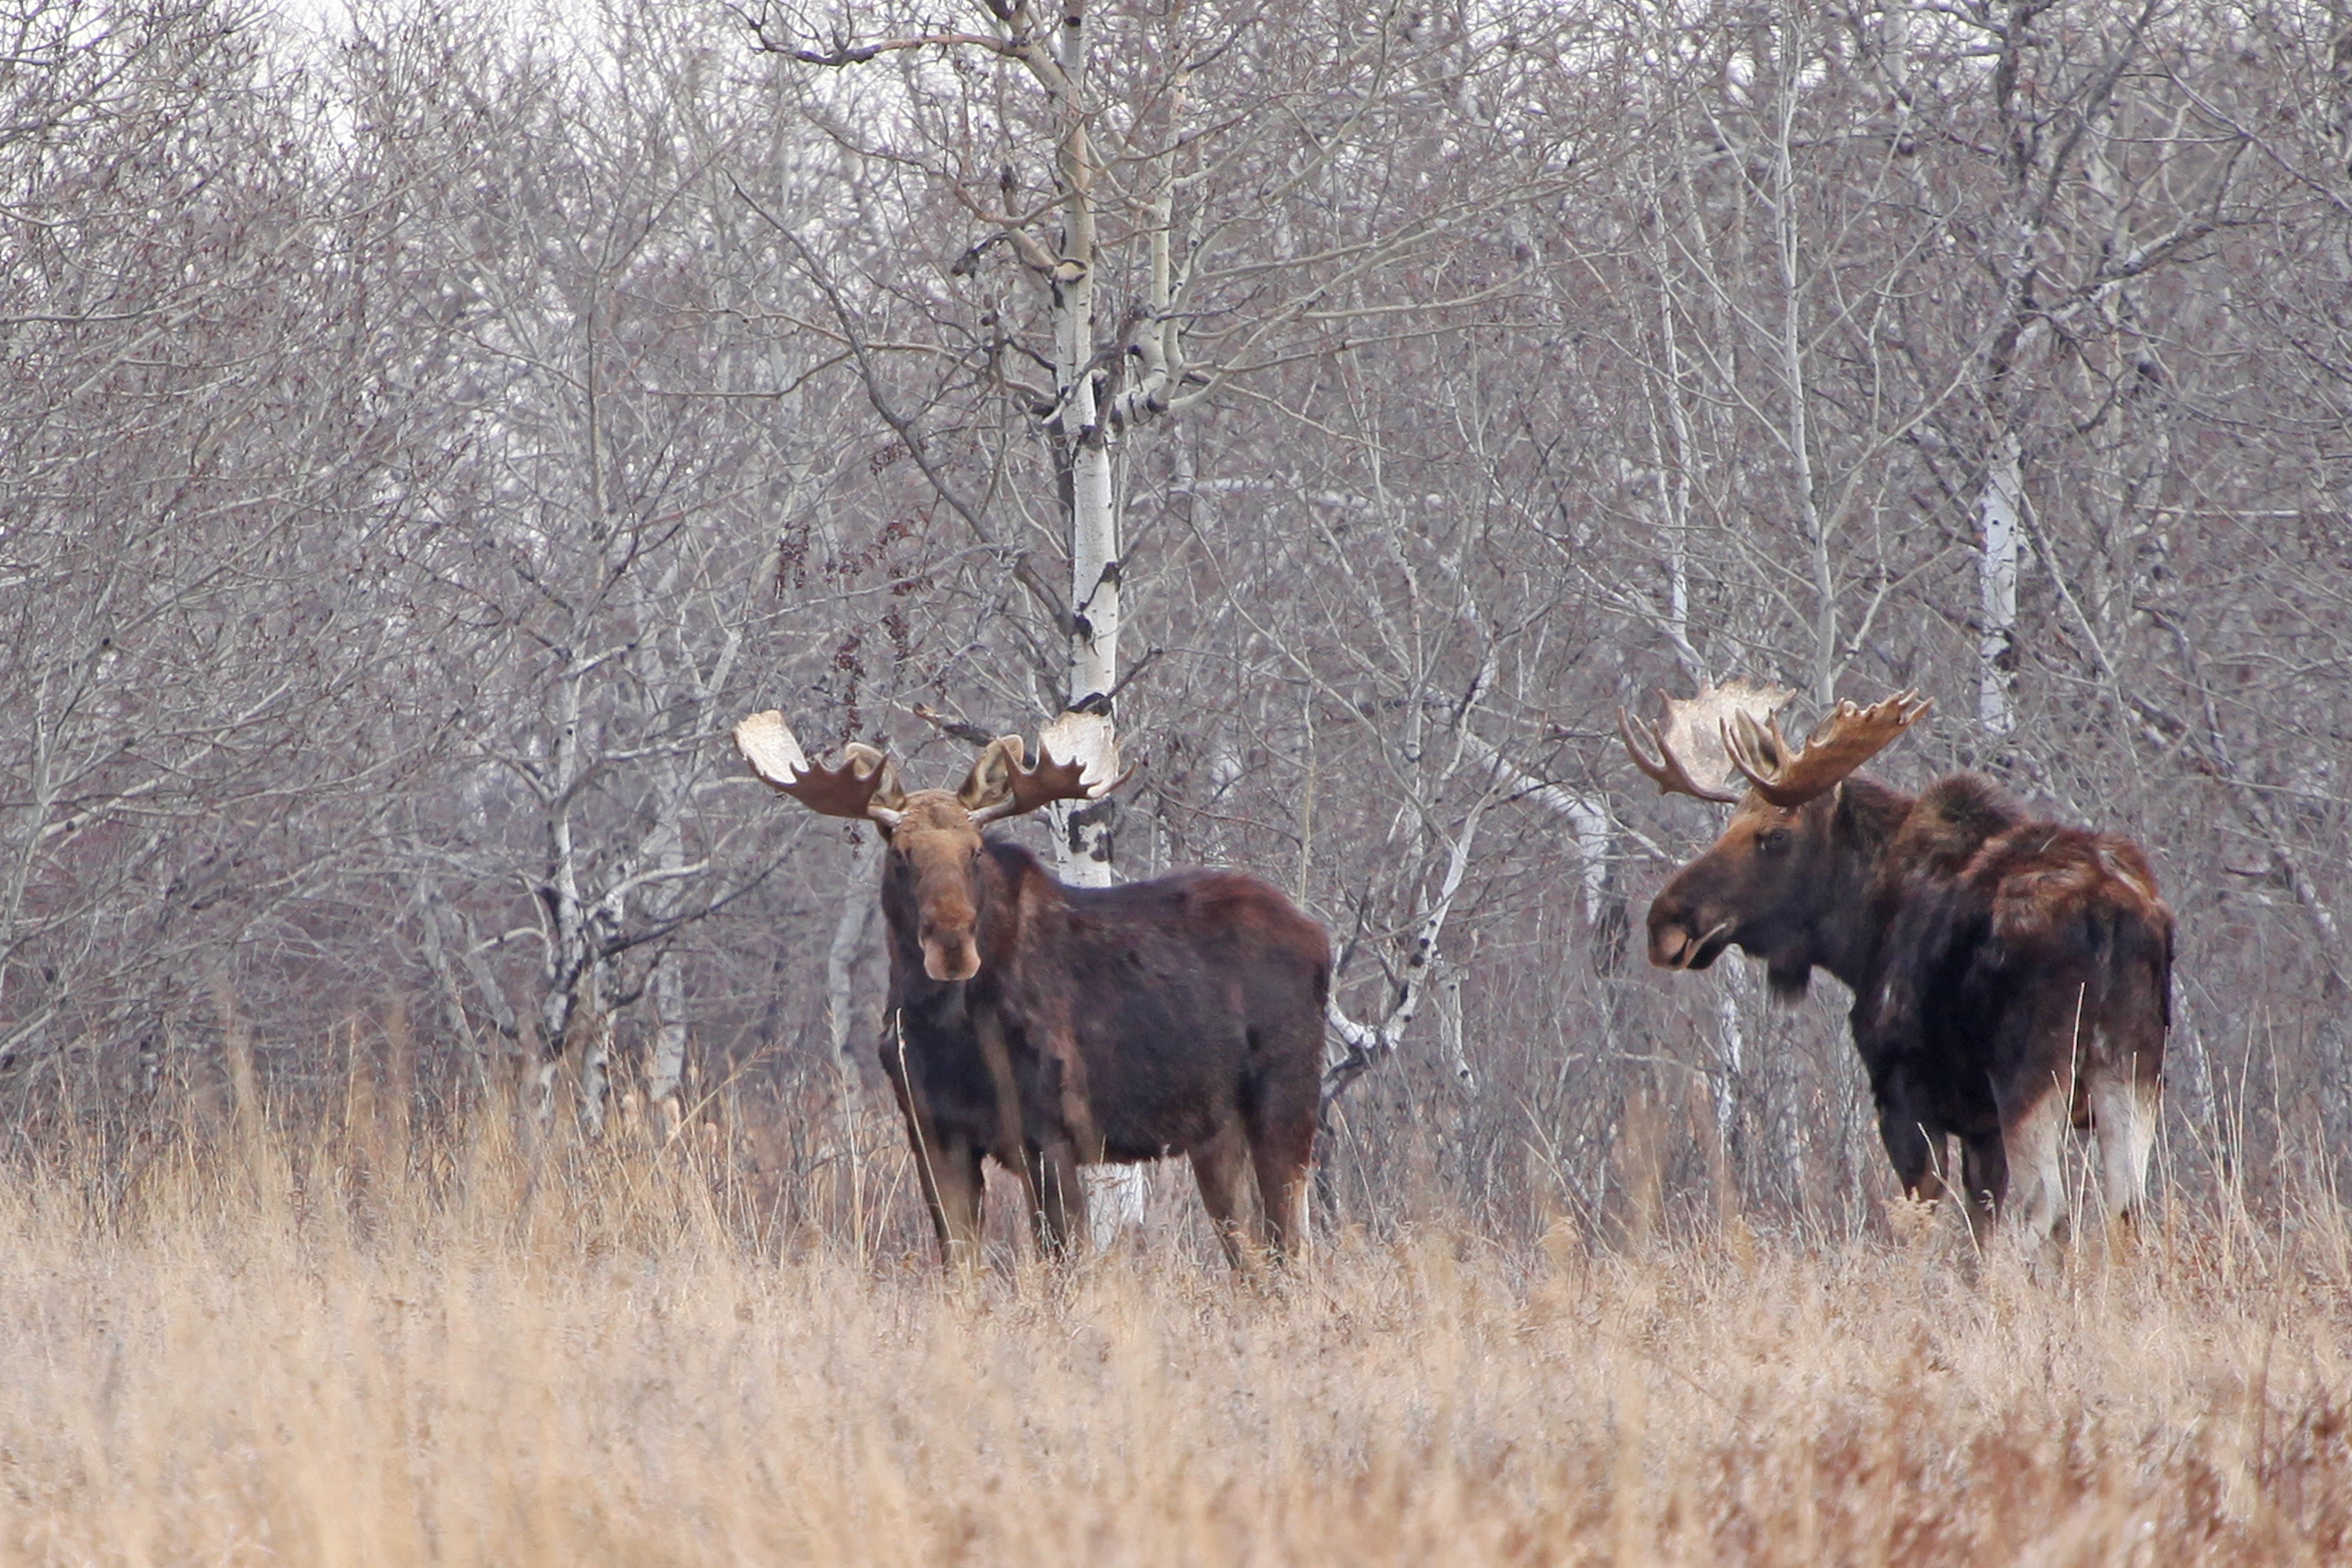 Bull Moose observed at J. Clark Salyer National Wildlife Refuge